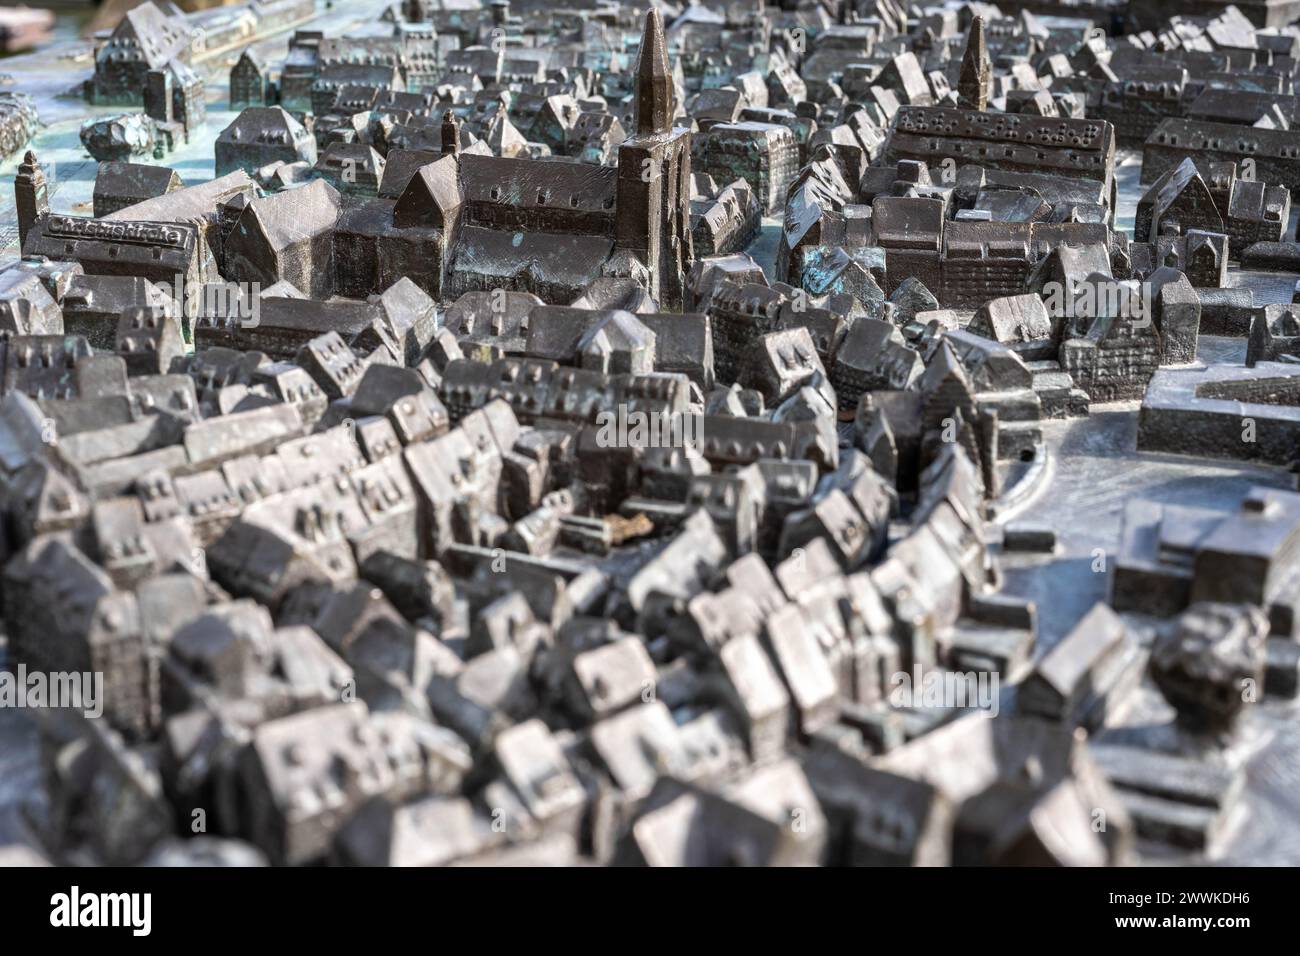 Description: Makrofotografie der Konstanzer Kupfer Miniatur Altstadt mit dem Münster unserer lieben Frau. Konstanz, Bodensee, Baden-Württemberg, Deuts Stock Photo